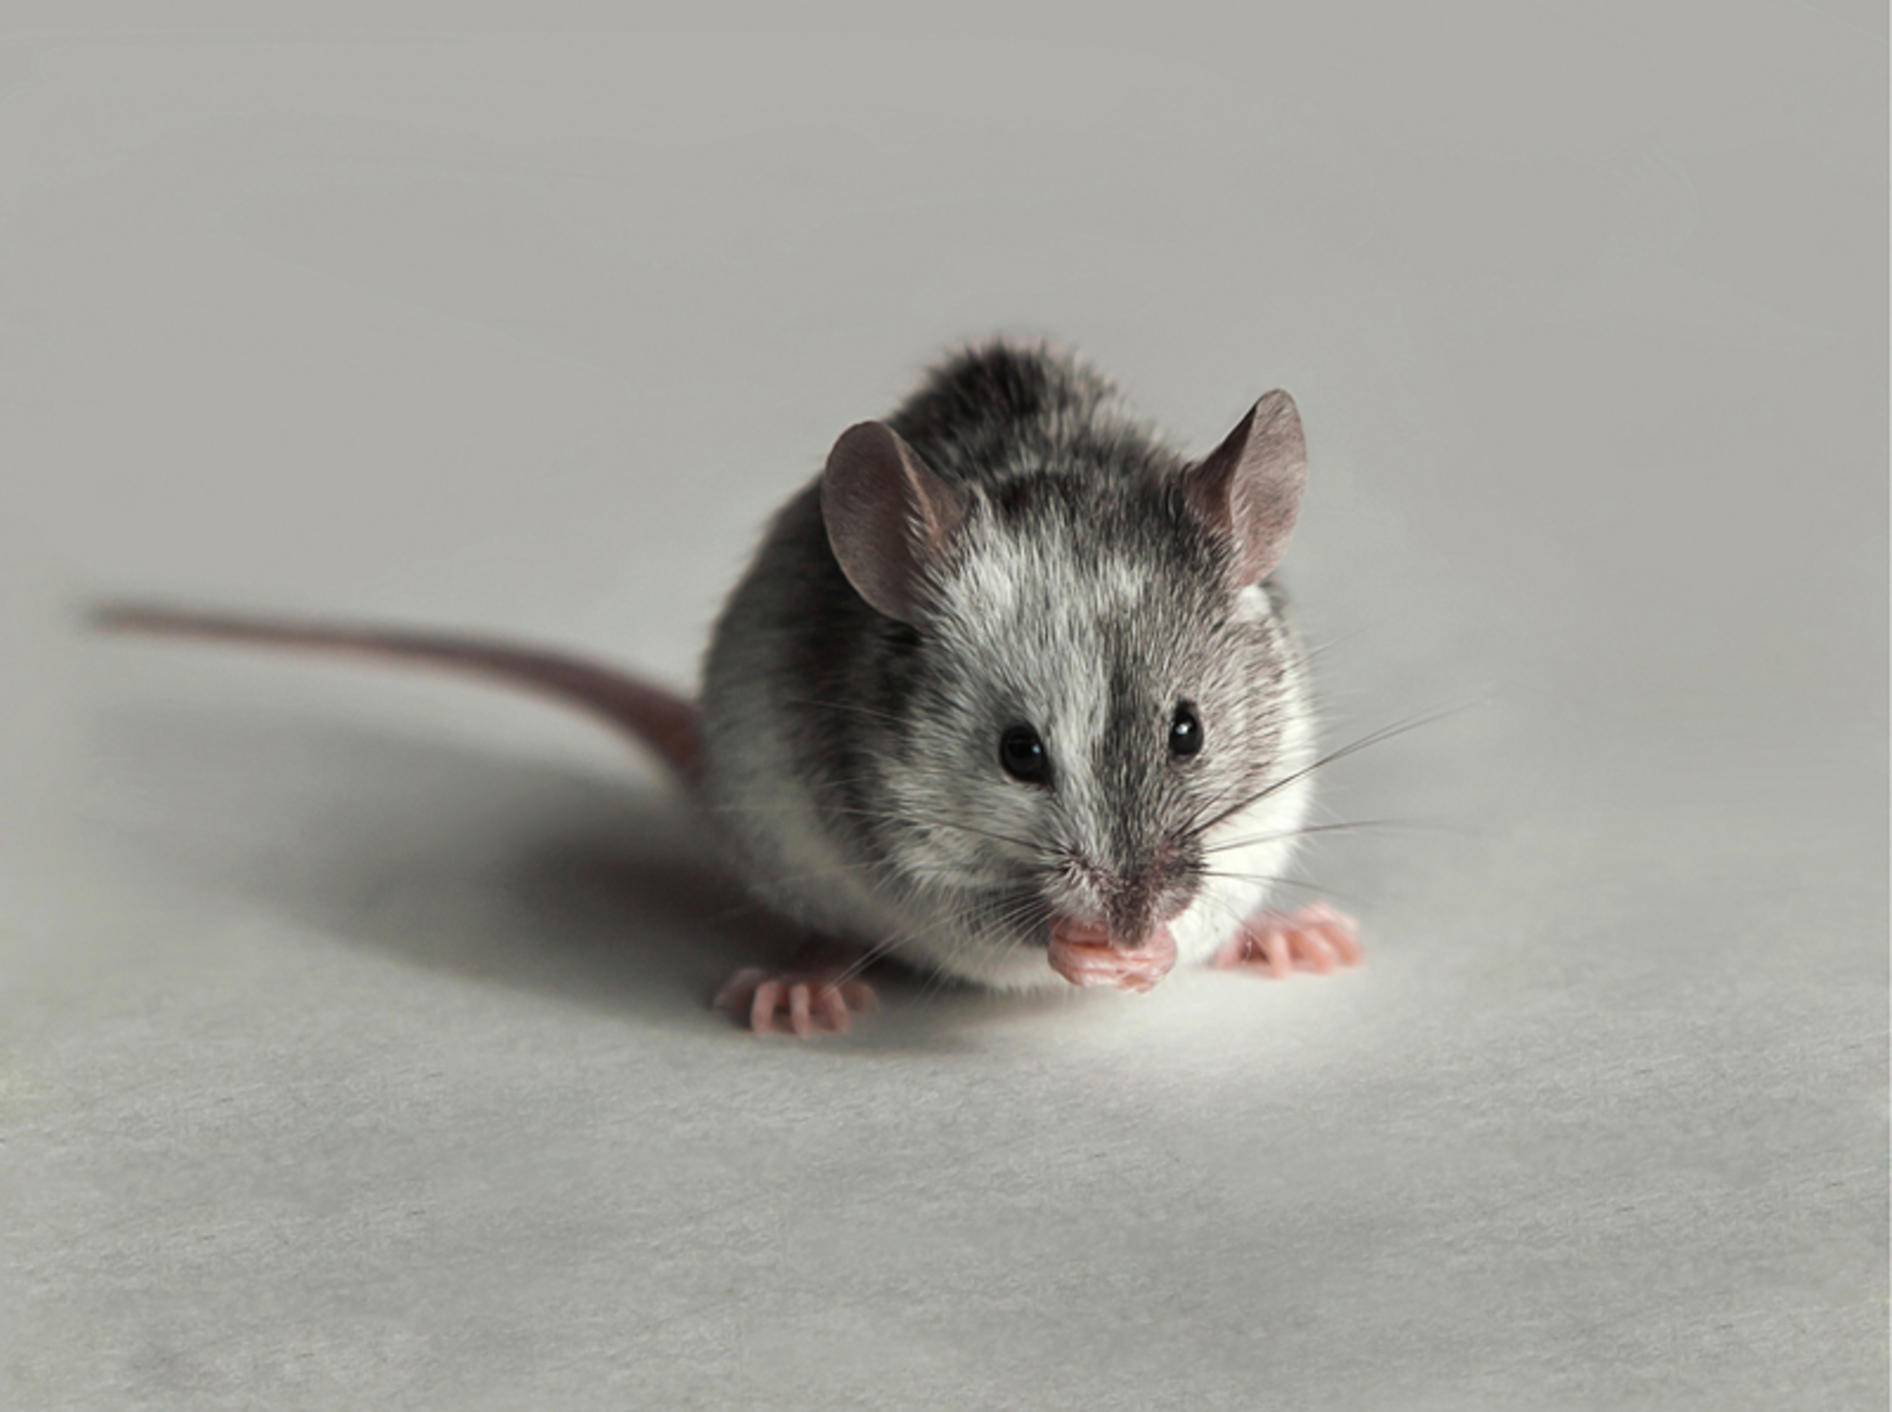 Was diese kleine Maus wohl zwischen ihren Pfoten hält? Es scheint ihr jedenfalls zu schmecken – Shutterstock / Nature Art